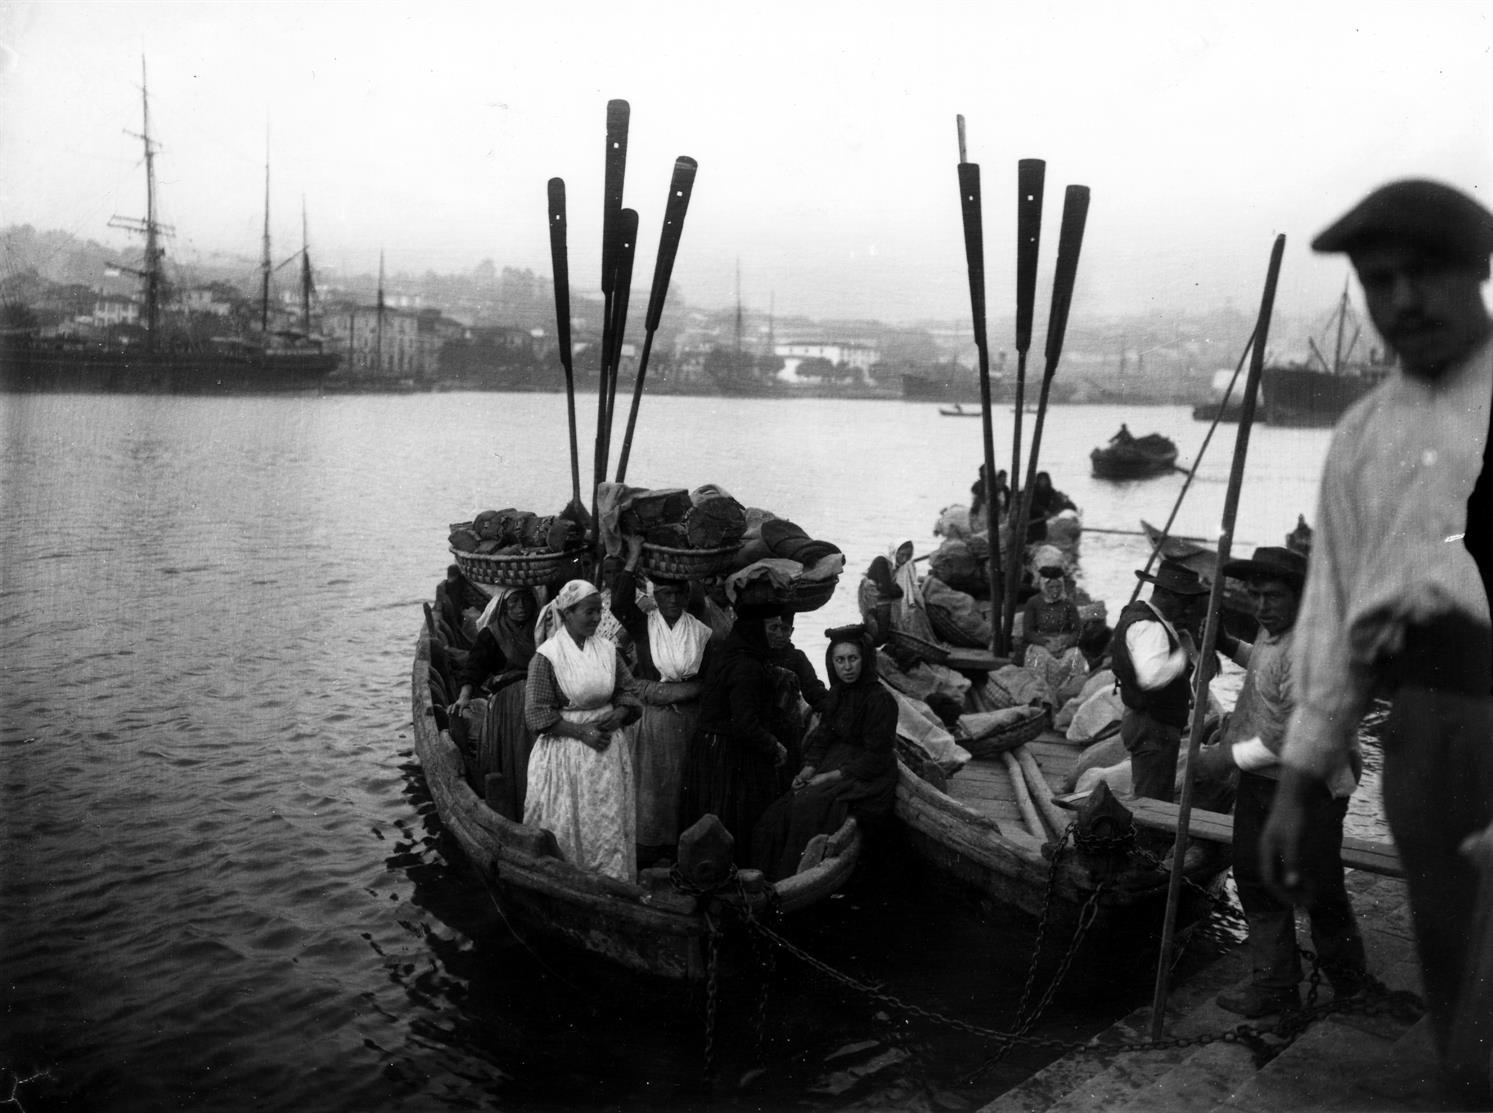 Porto - Gaia : as travessias do Rio Douro : desembarque das Padeiras de Avintes em barcas de passagem